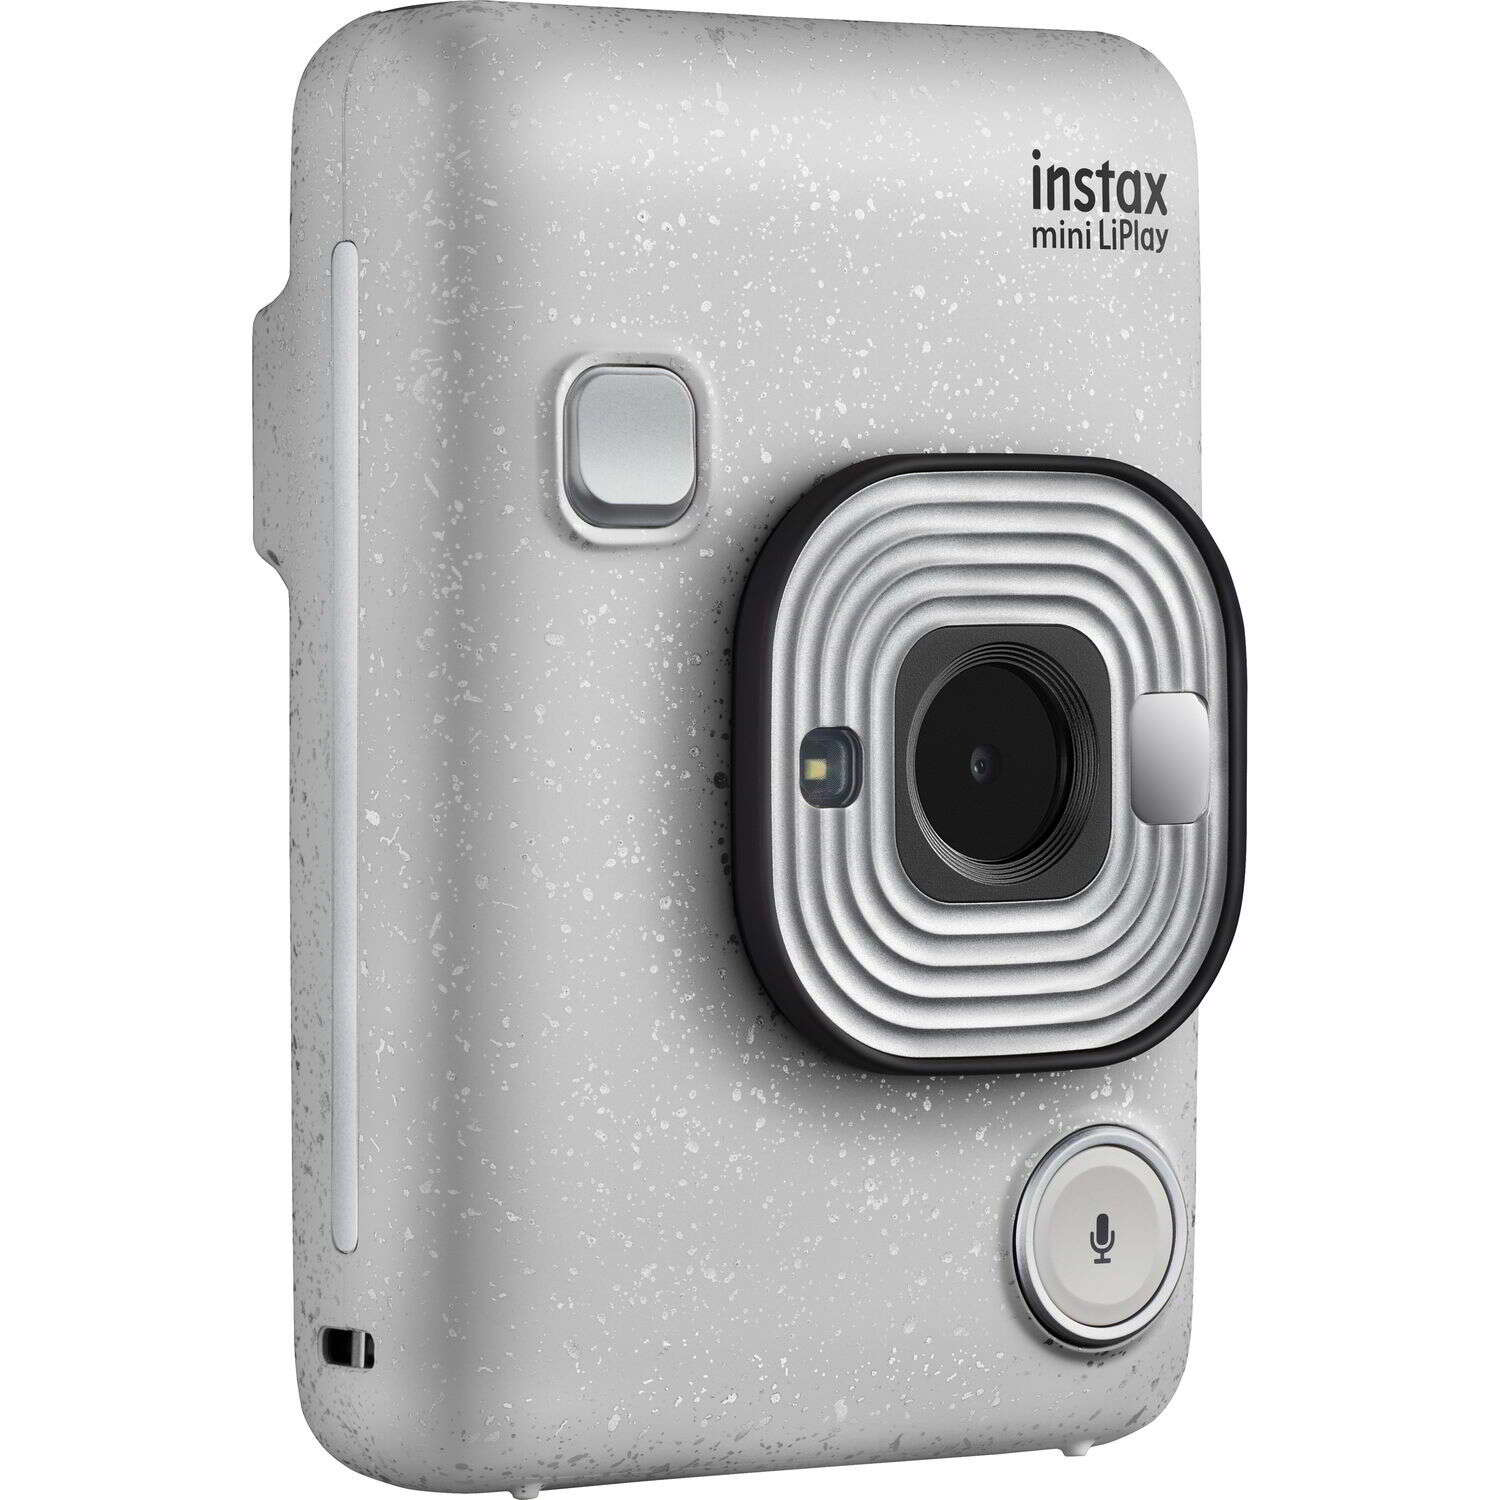 Fujifilm instax mini liplay ex d instant fényképezőgép - fehér